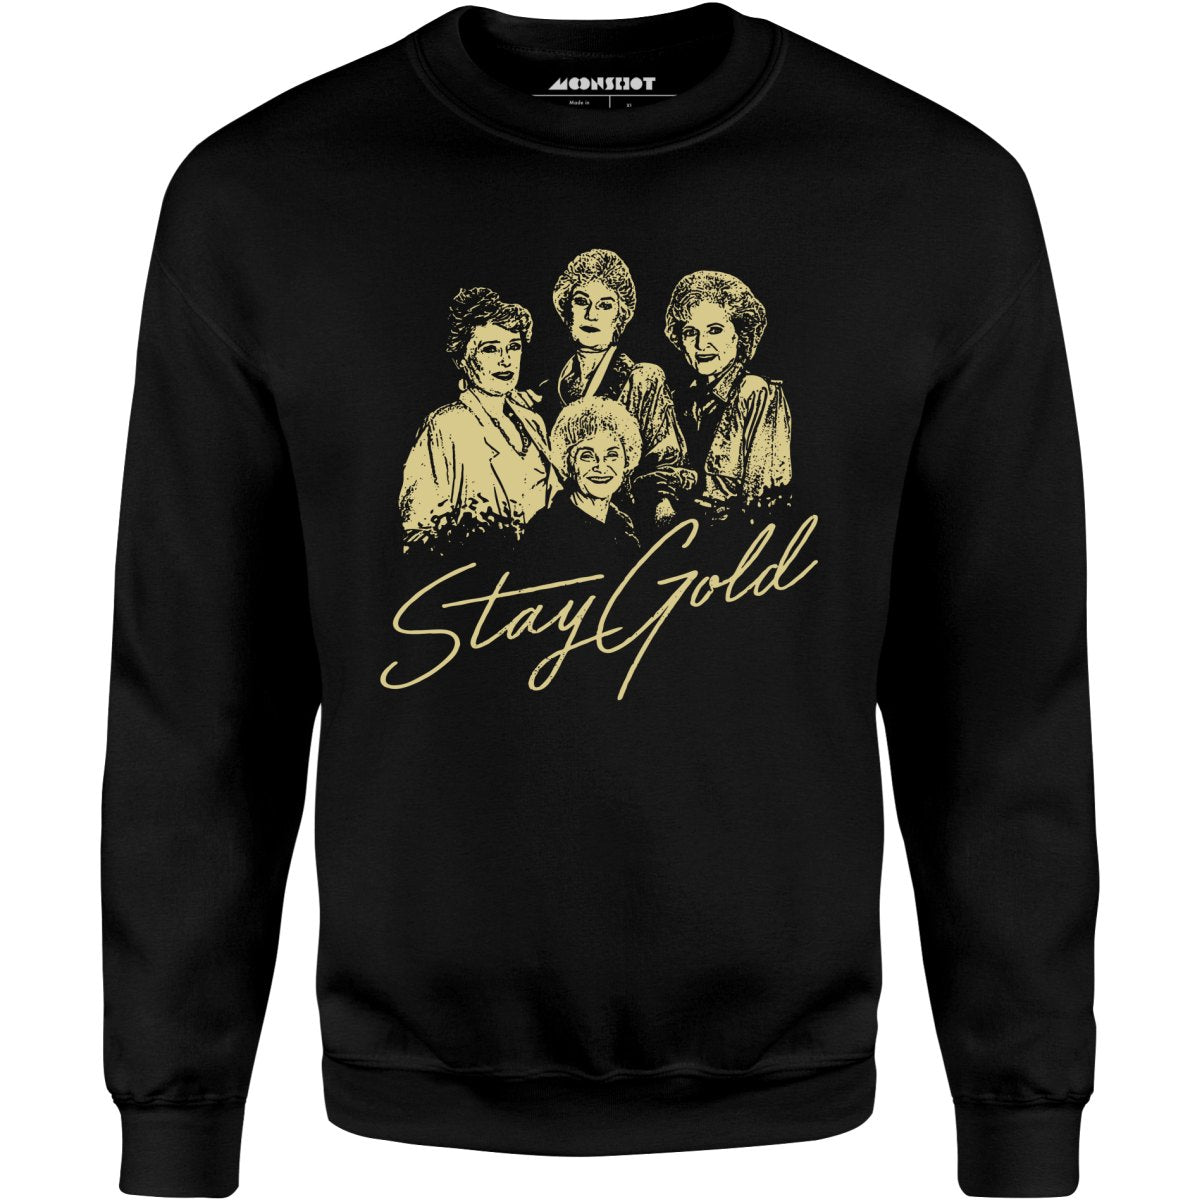 Stay Gold - Golden Girls - Unisex Sweatshirt